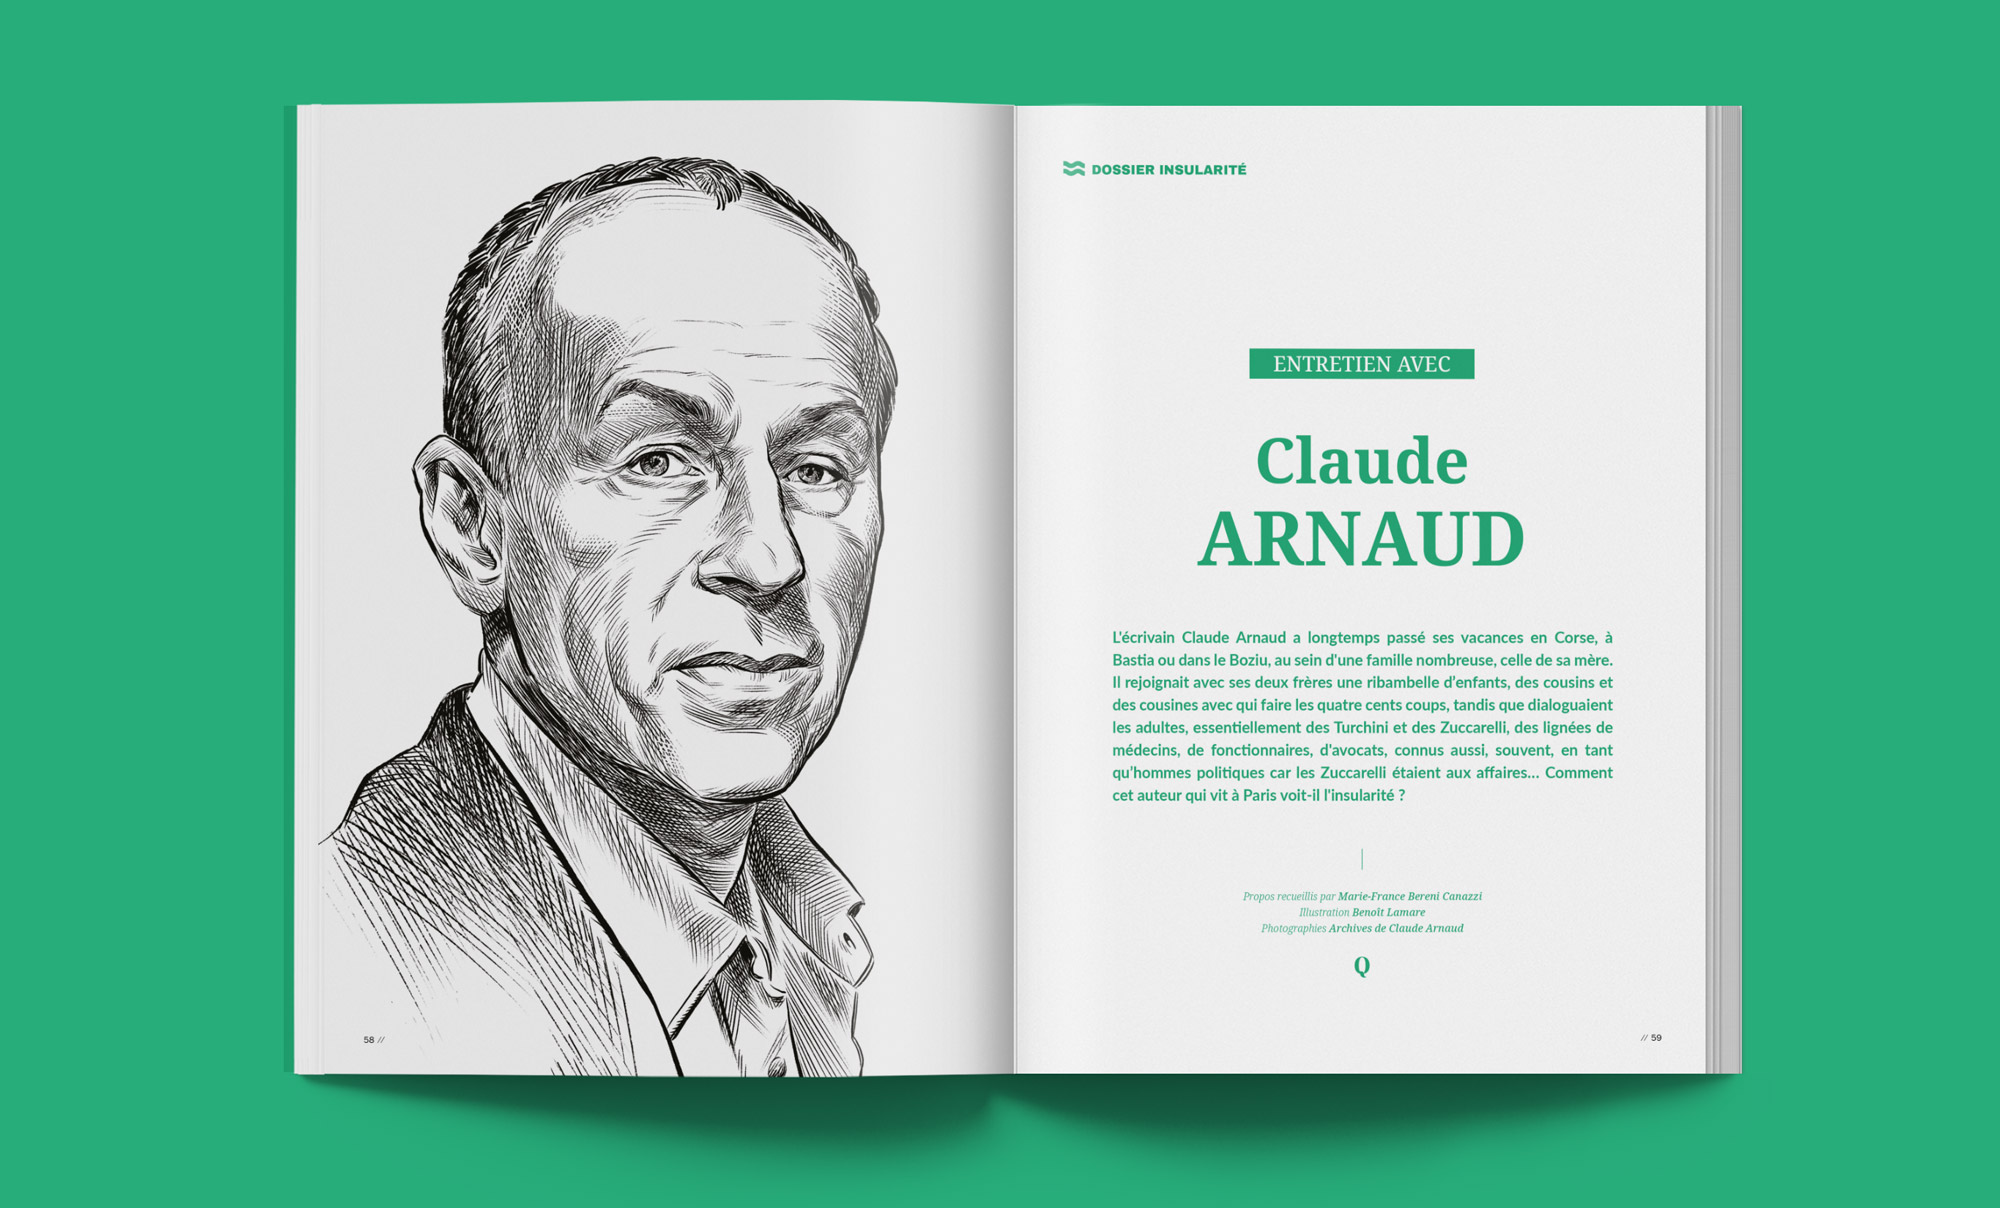 Claude arnaud - dossier insularité - Quì magazine volume 4